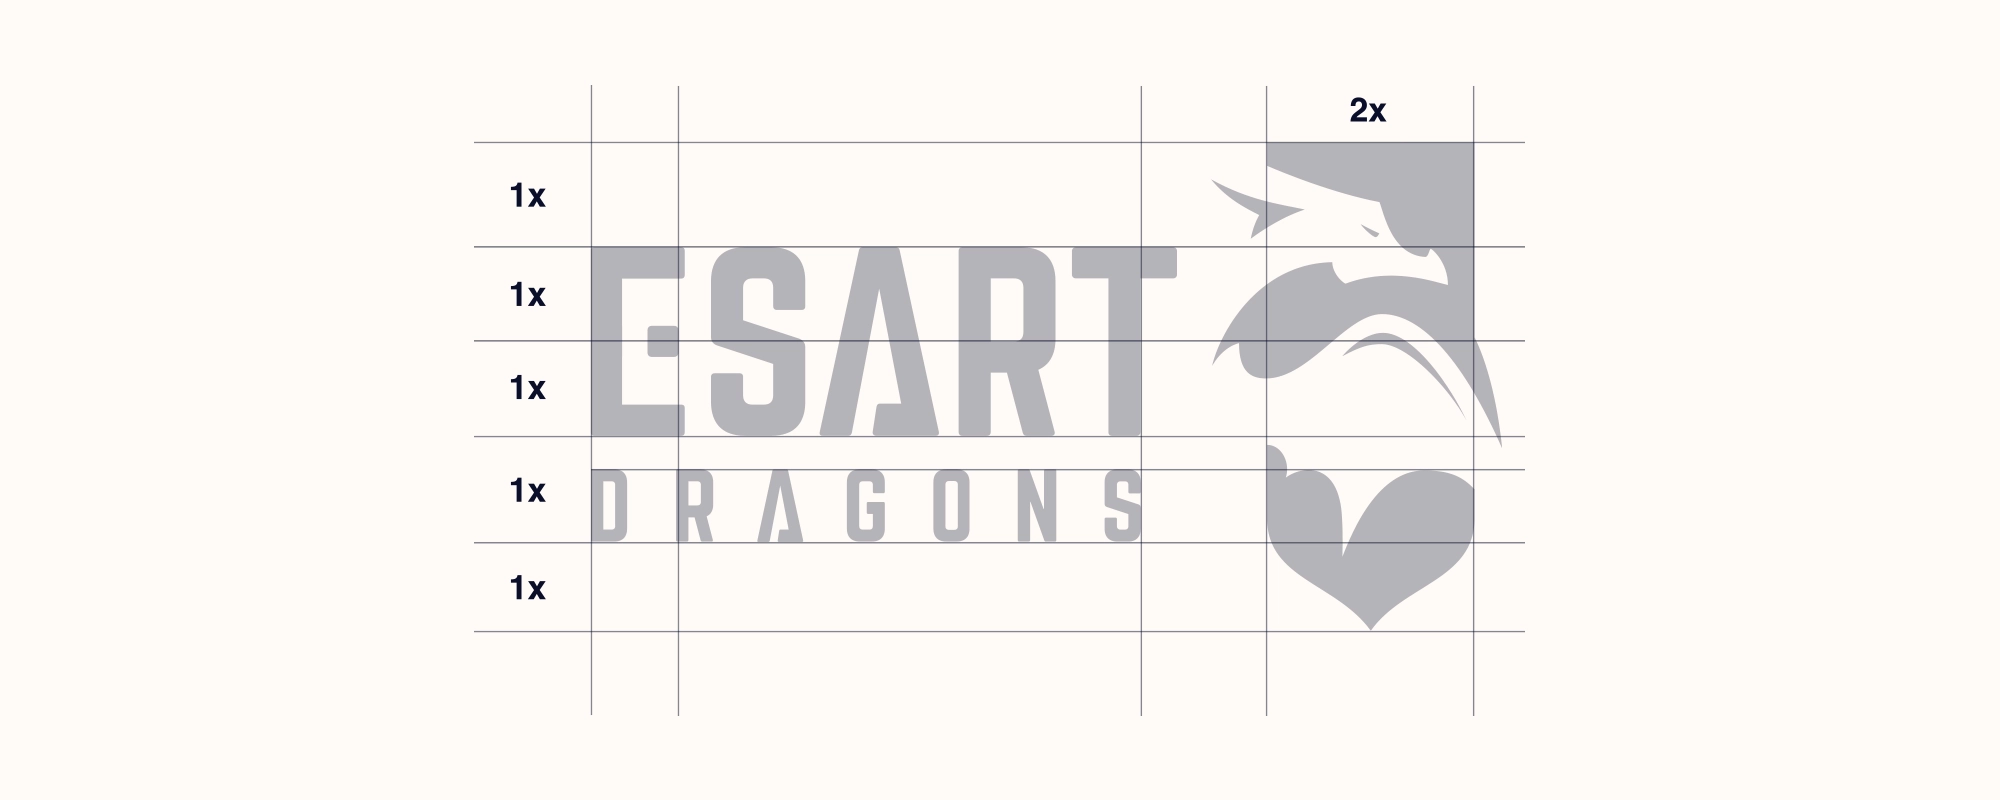 Esart Dragons - construct 03 - Art Studio JW